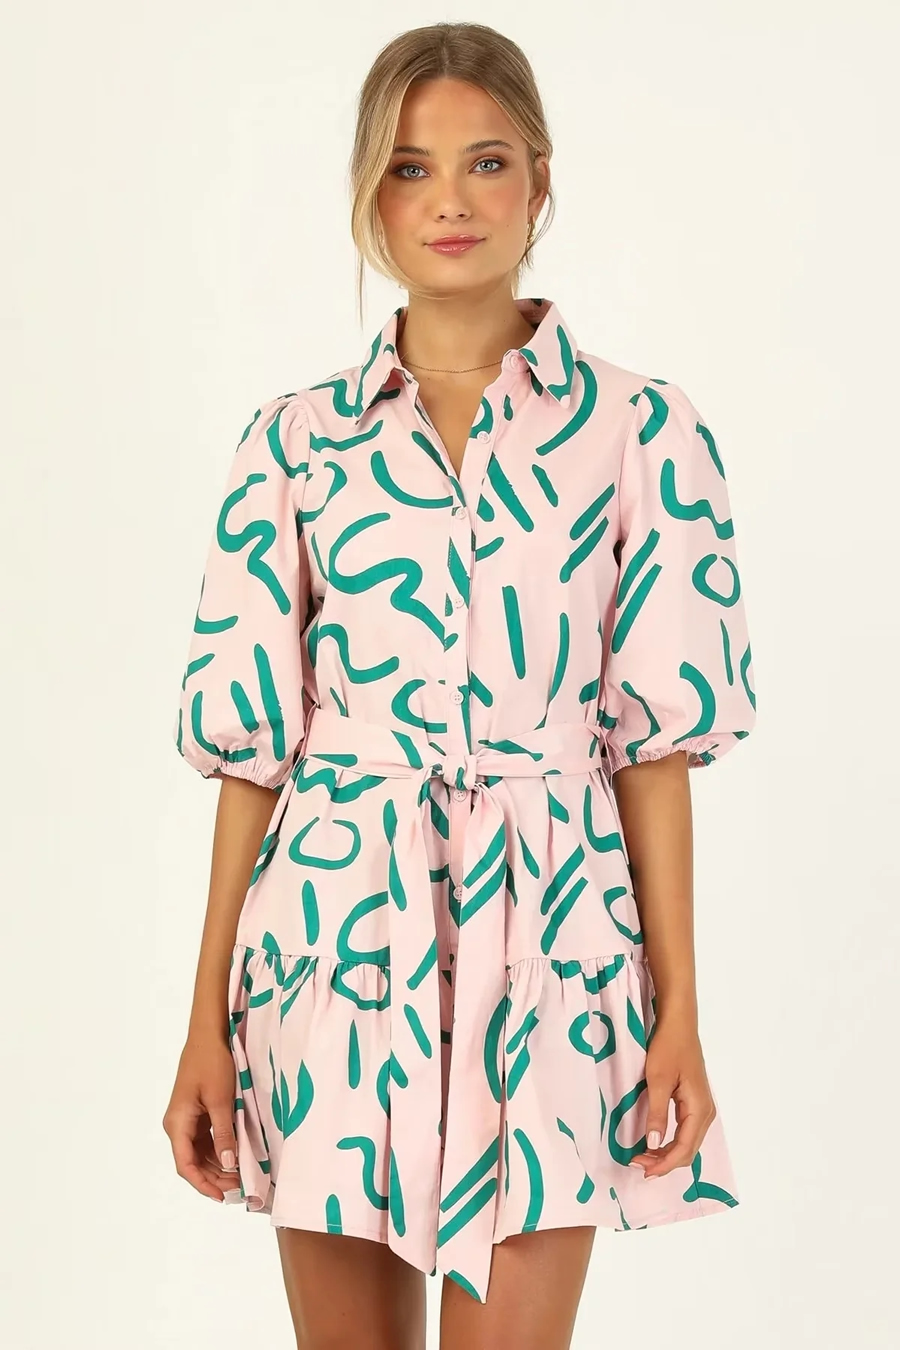 Fashion Printing Polyester Print Lace Lapel Dress,Mini & Short Dresses